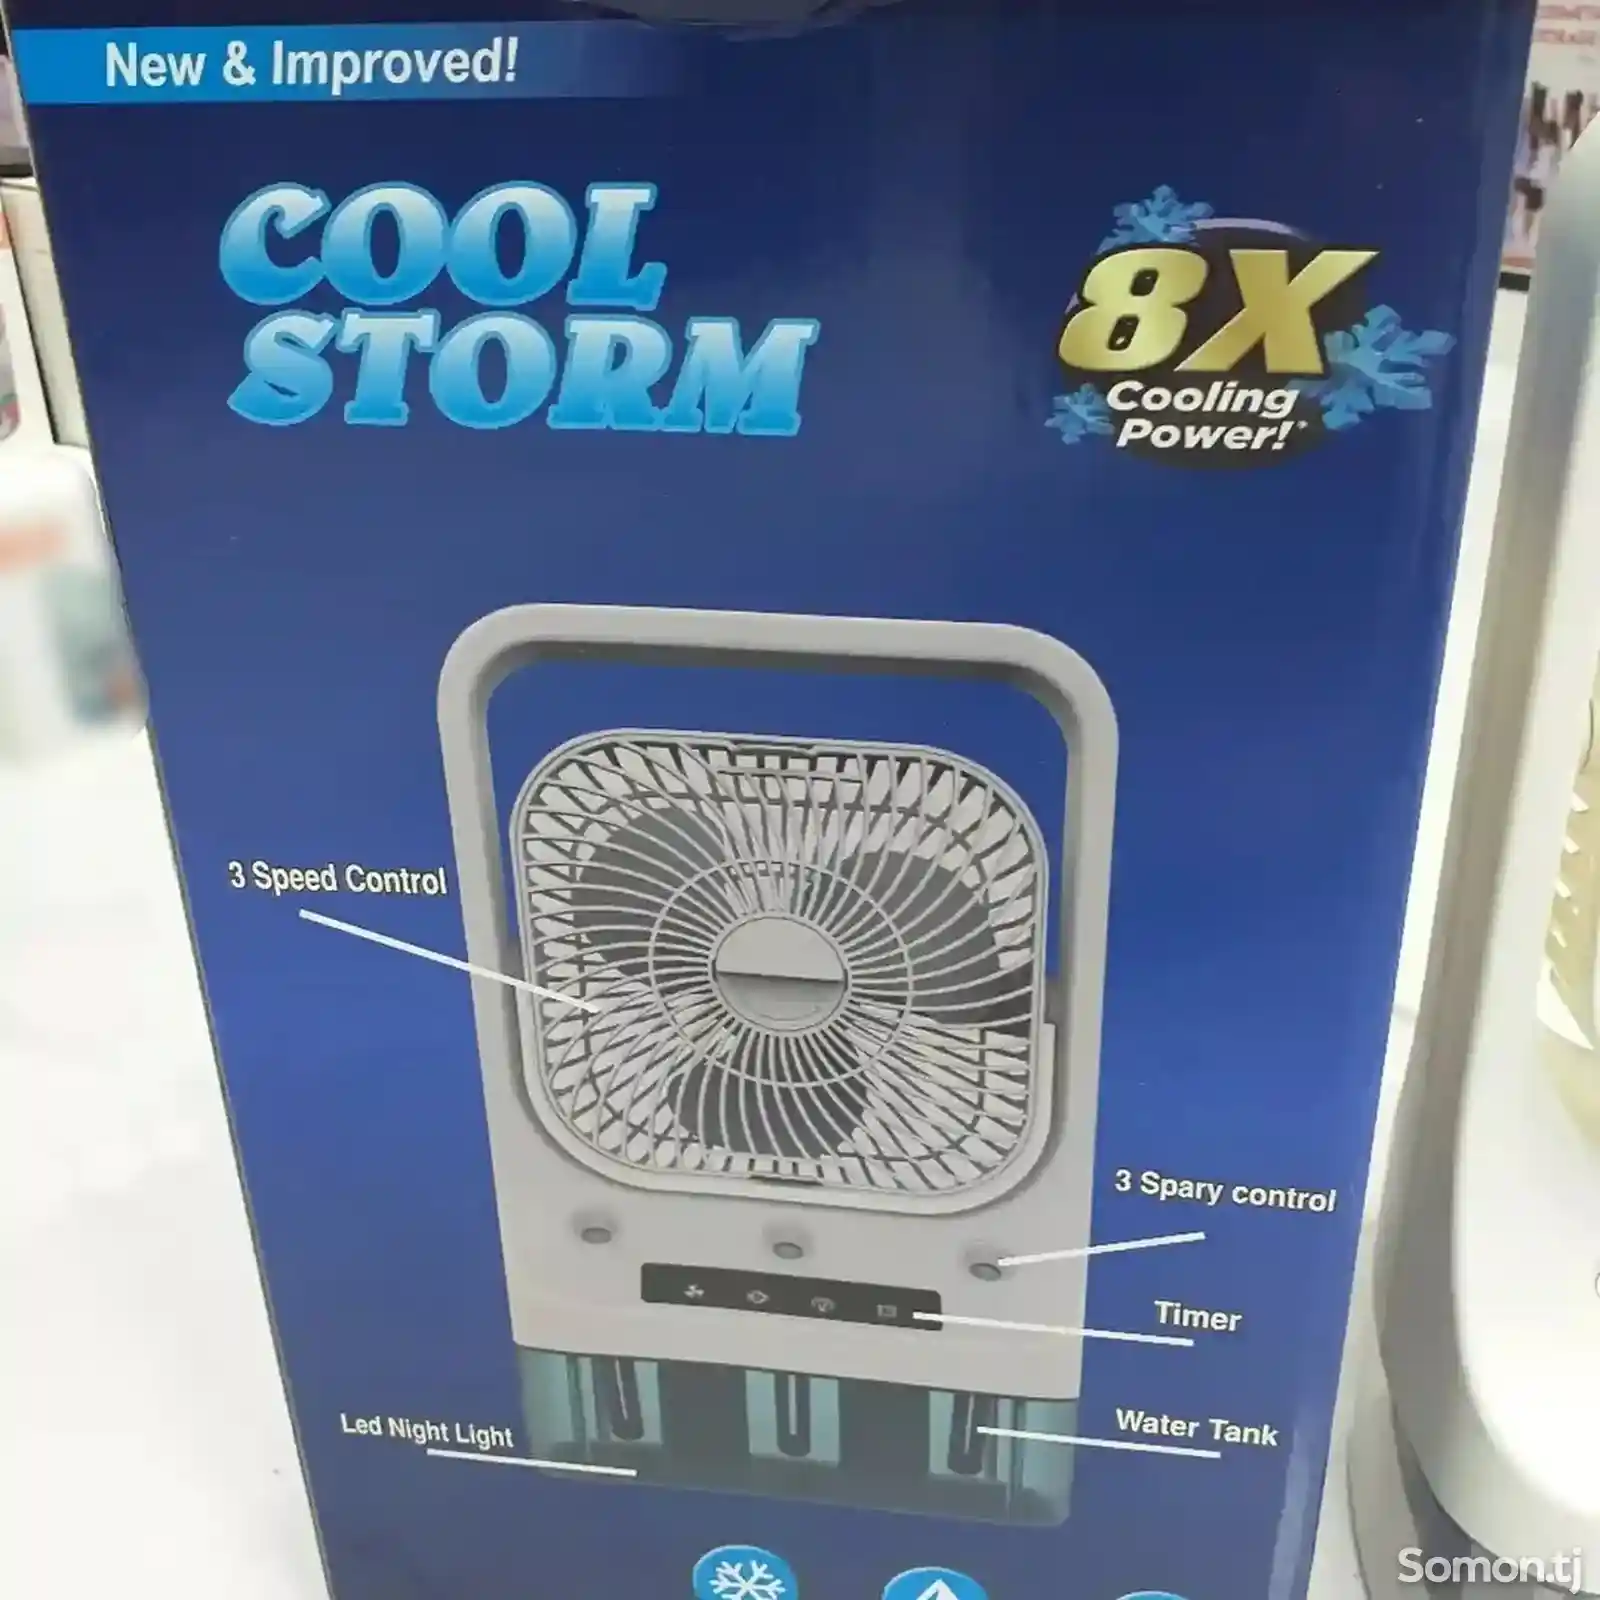 Вентилятор Cool Storm 8x-2